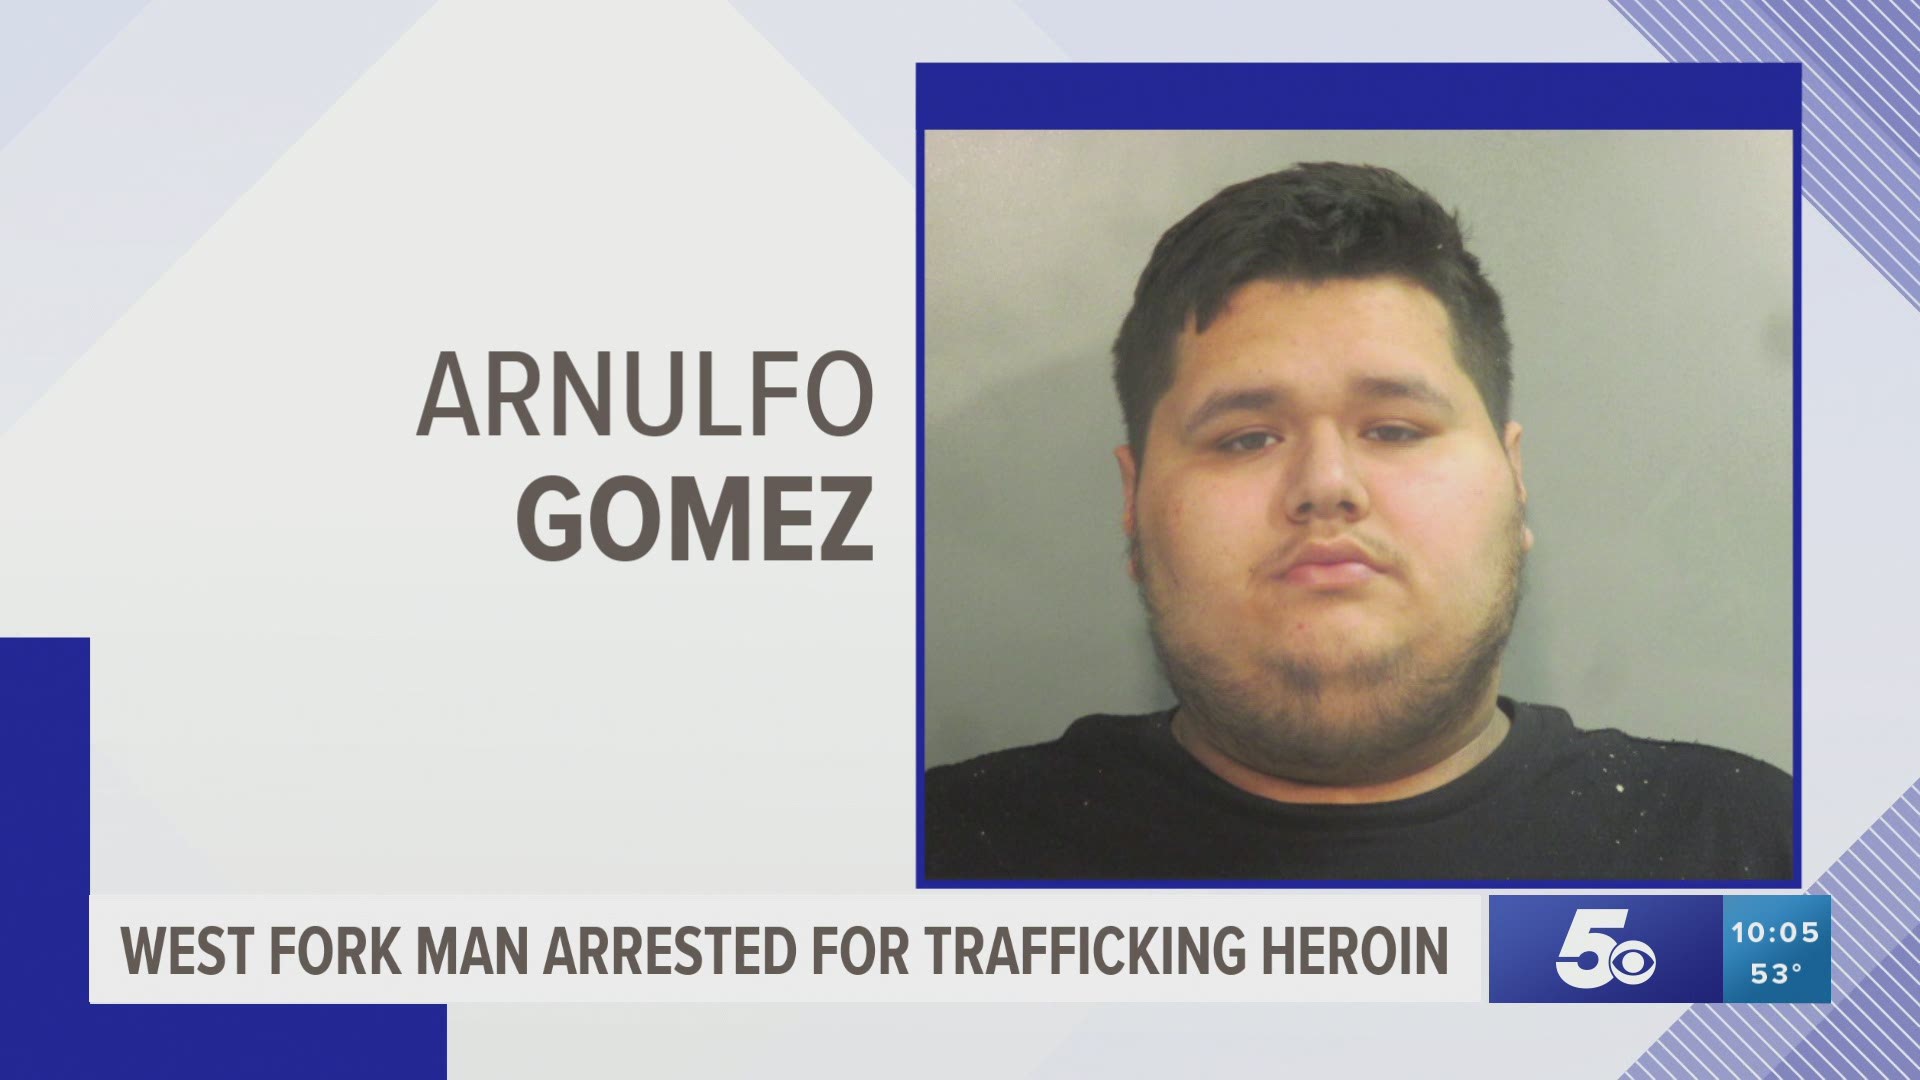 West Fork man arrested for trafficking heroin